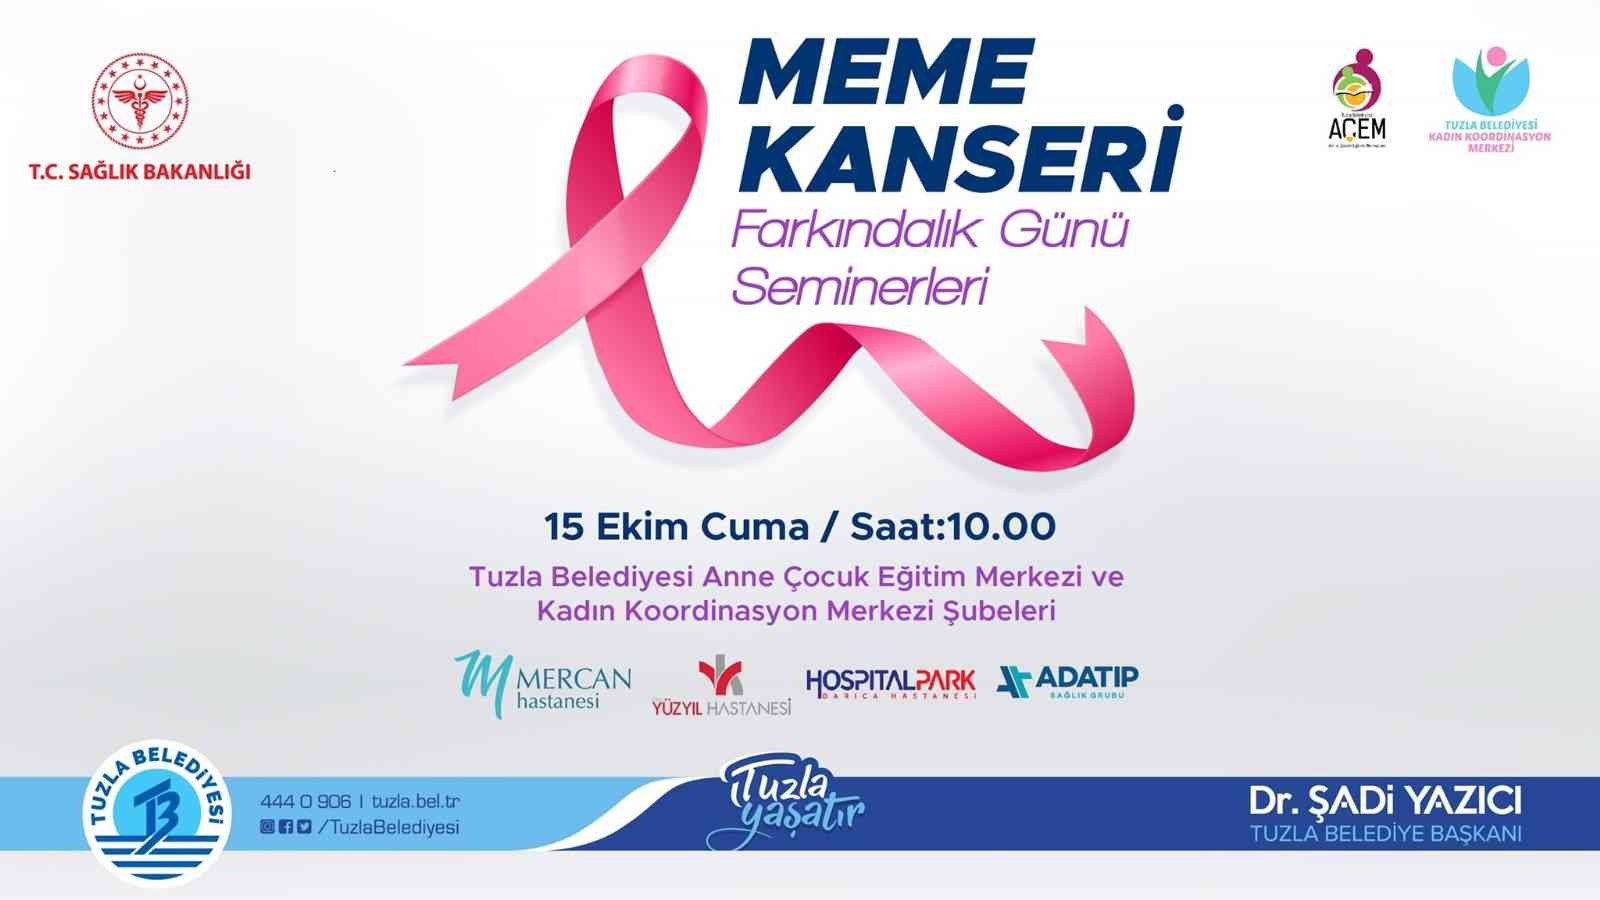 Tuzla Belediyesi’nin düzenlediği meme kanseri farkındalık seminerleri başlıyor